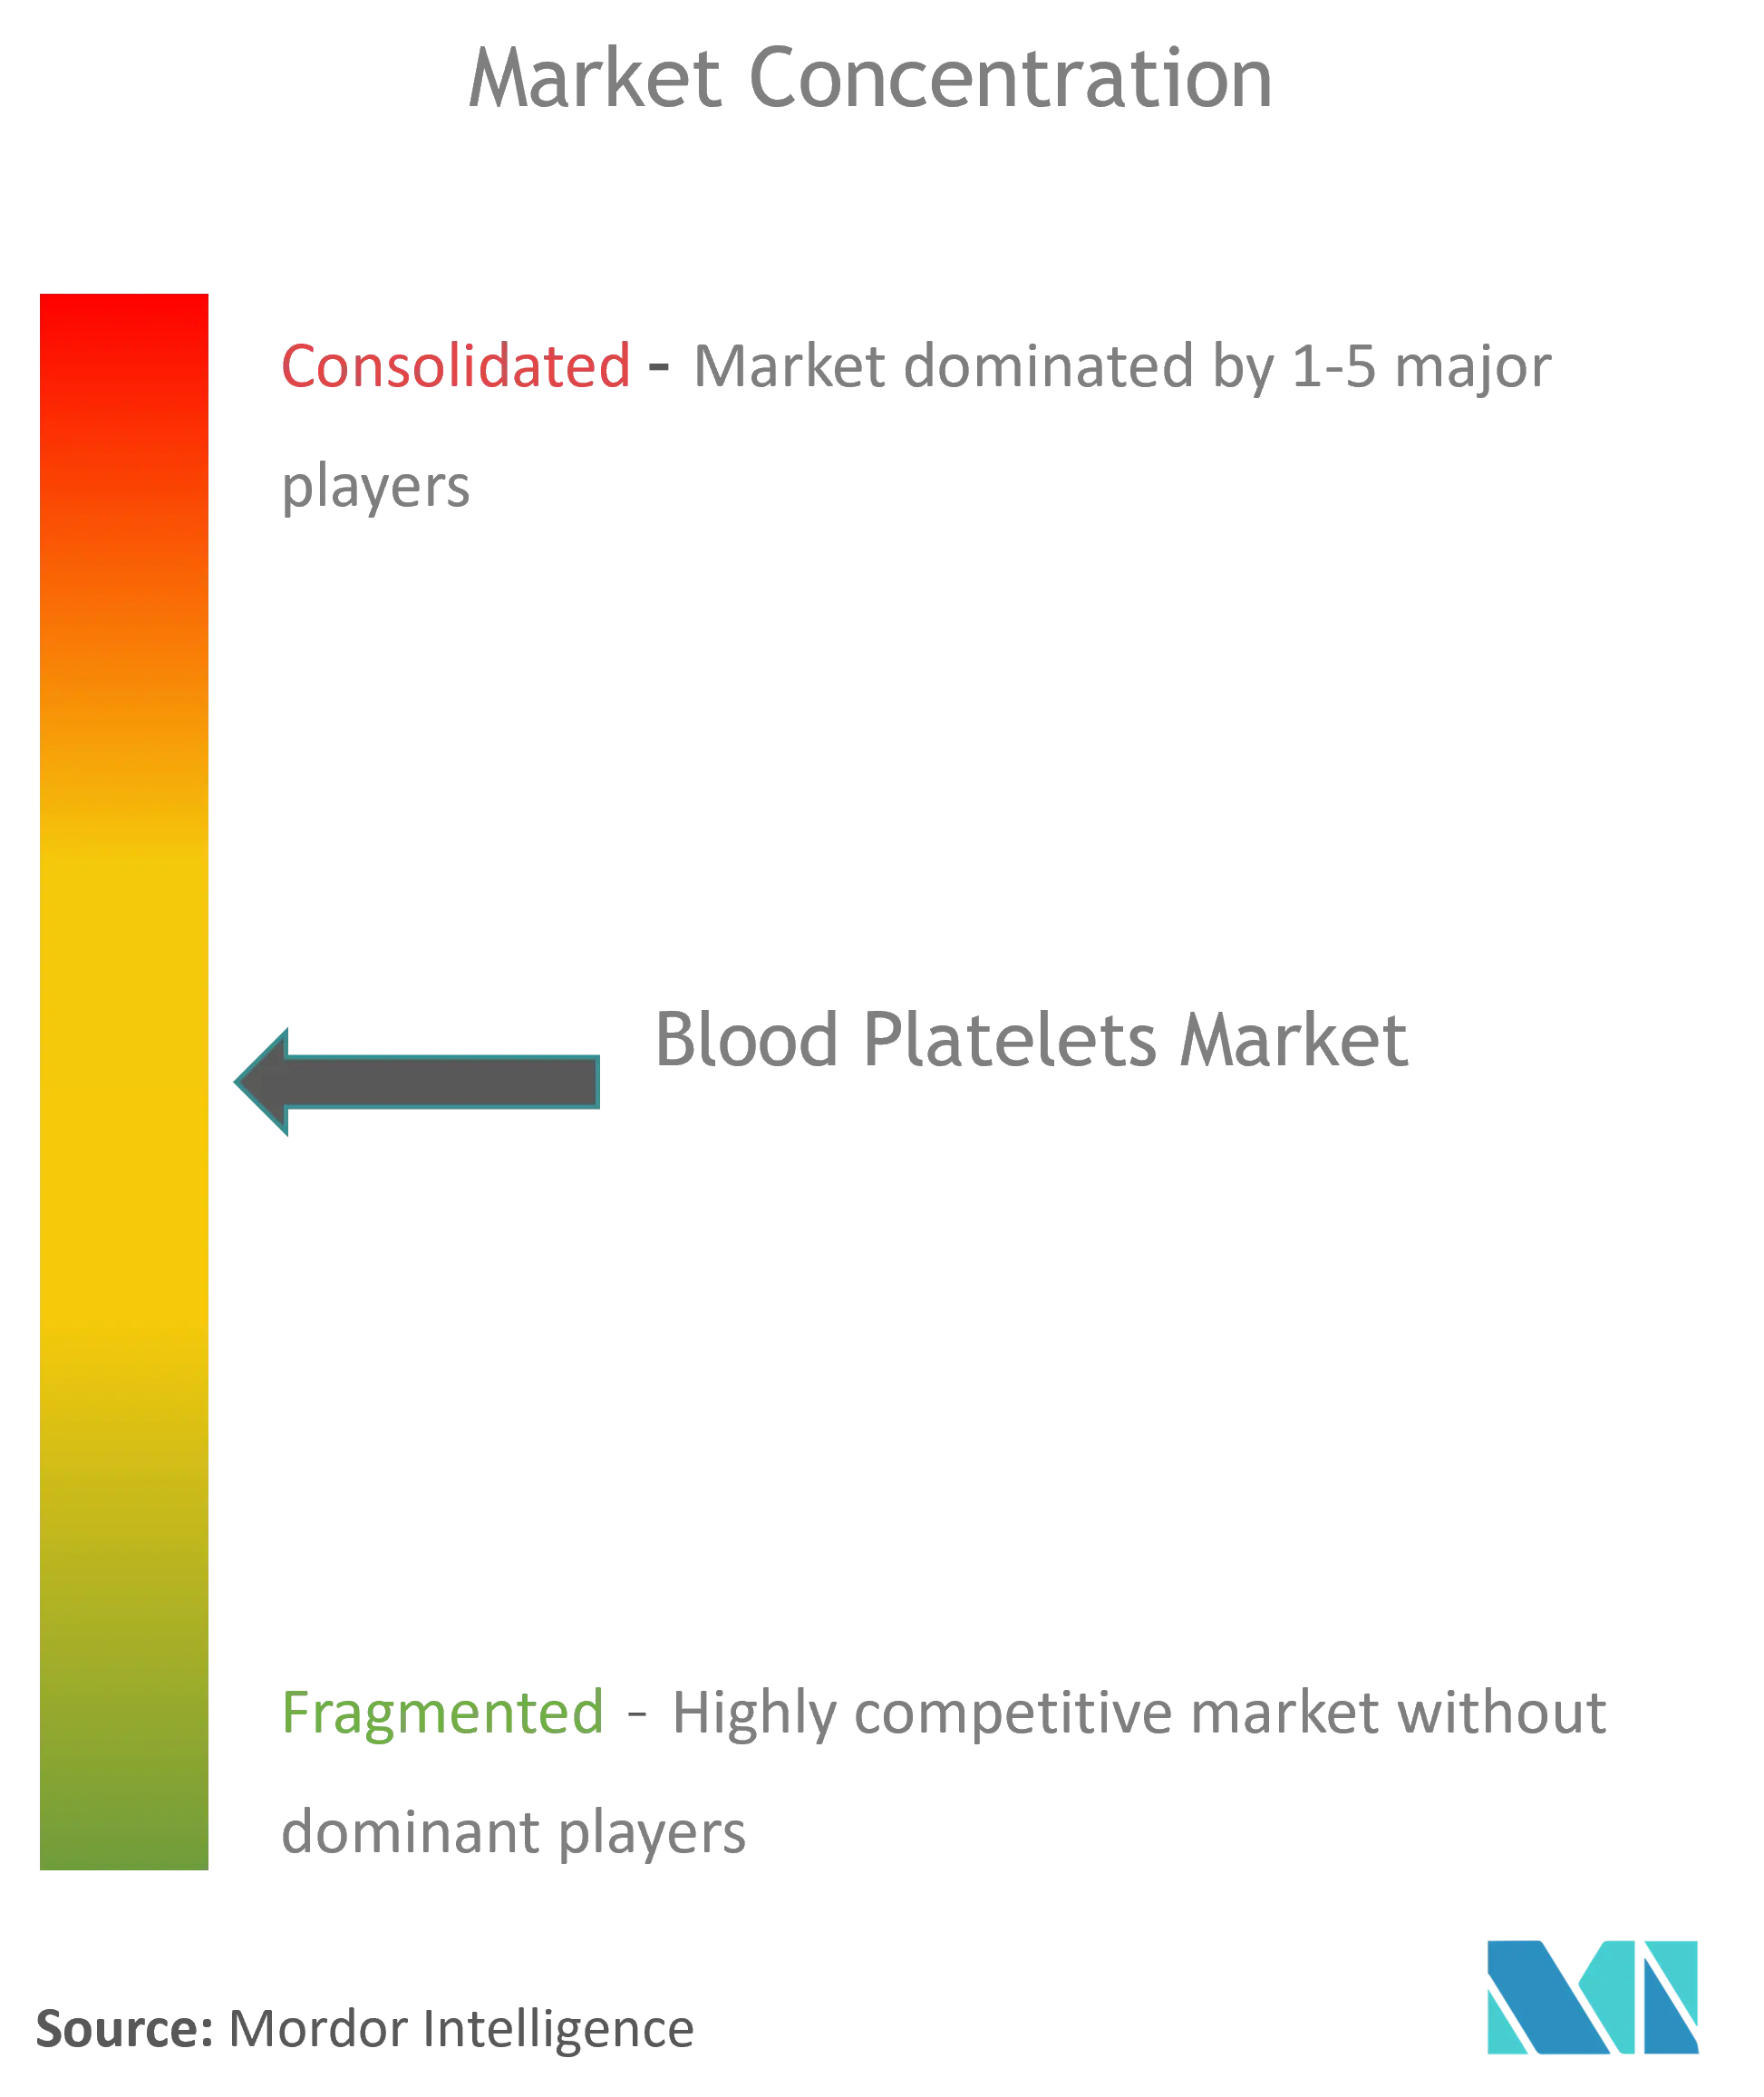 Global Blood Platelets Market Concentration